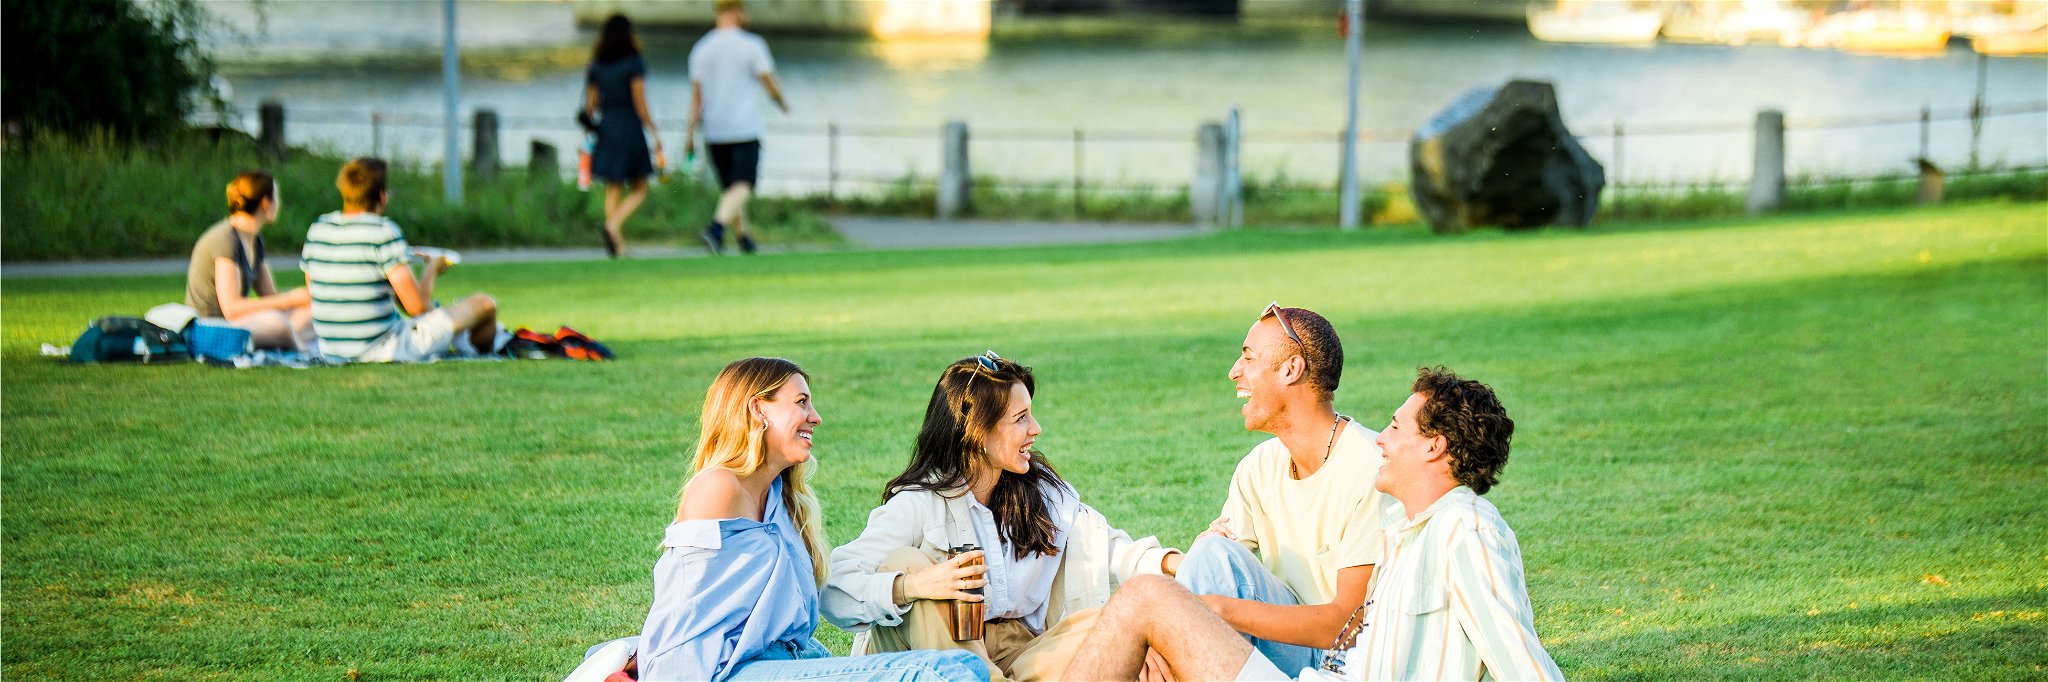 Im St. Johanns-Park fühlen sich alle Generationen wohl. Beim Picknick trifft man sich gerne mit Freunden.